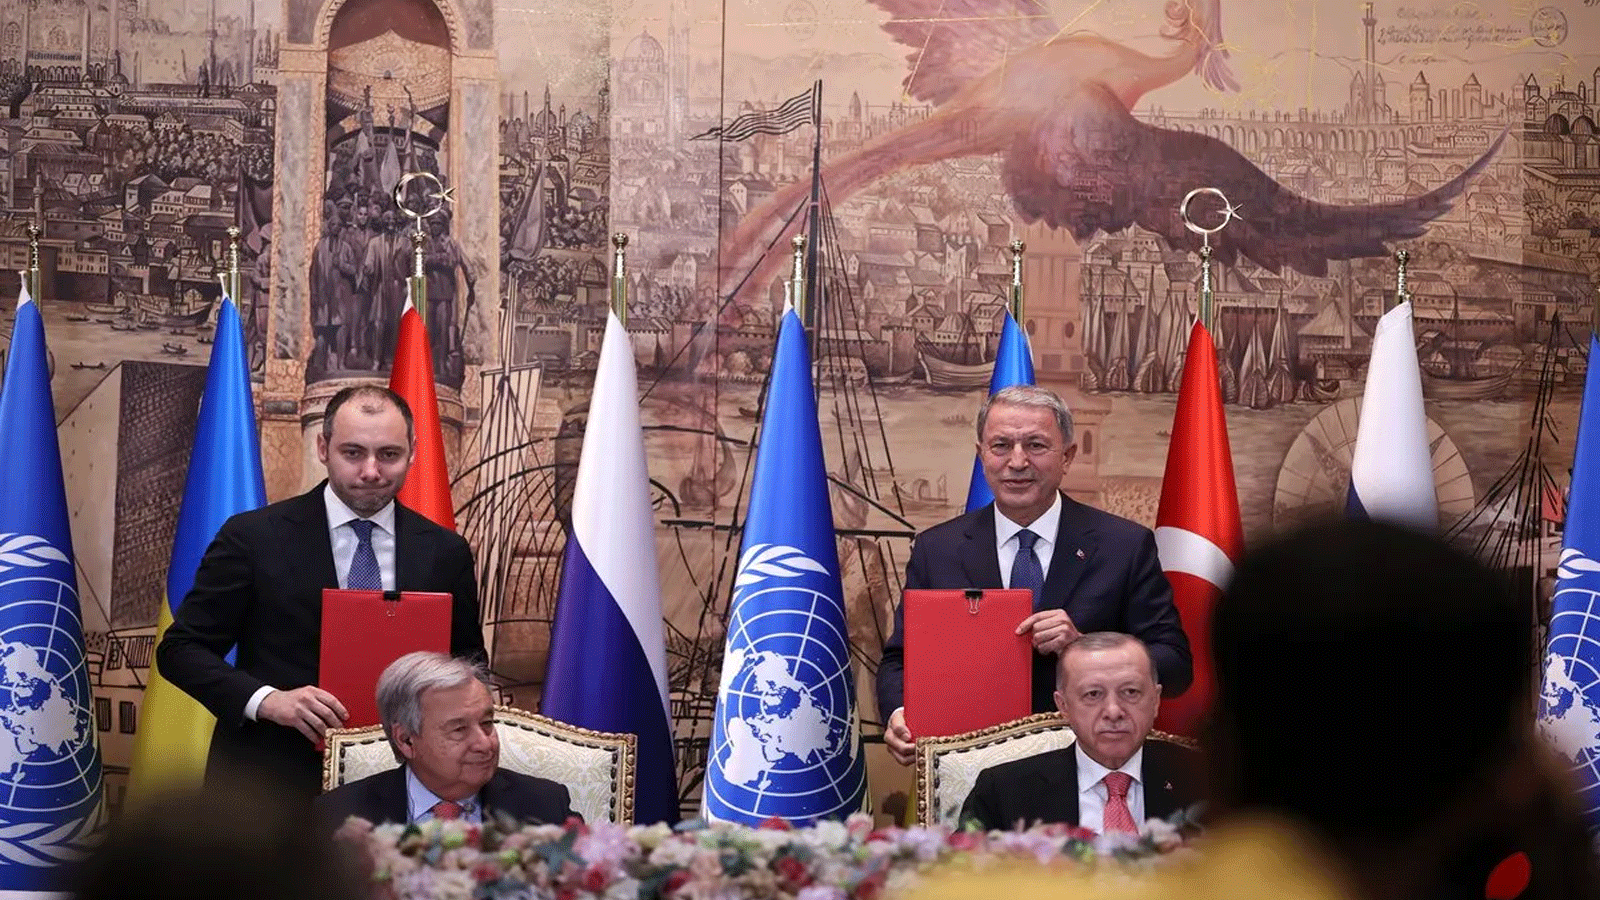 صورة أرشيفية تجمع الرئيس التركي رجب طيب أردوغان (من الأمام إلى اليمين) والأمين العام للأمم المتحدة أنطونيو غوتيريش (من الأمام إلى اليسار) ووزير الدفاع التركي خلوصي أكار (من الخلف إلى اليمين) خلال مراسم التوقيع على الاتفاقية التي تحرر صادرات الحبوب الأوكرانية. تم توقيع الاتفاقية بين تركيا وروسيا وأوكرانيا والأمم المتحدة في اسطنبول، تركيا في 22 تموز\يوليو 2022(الأناضول)